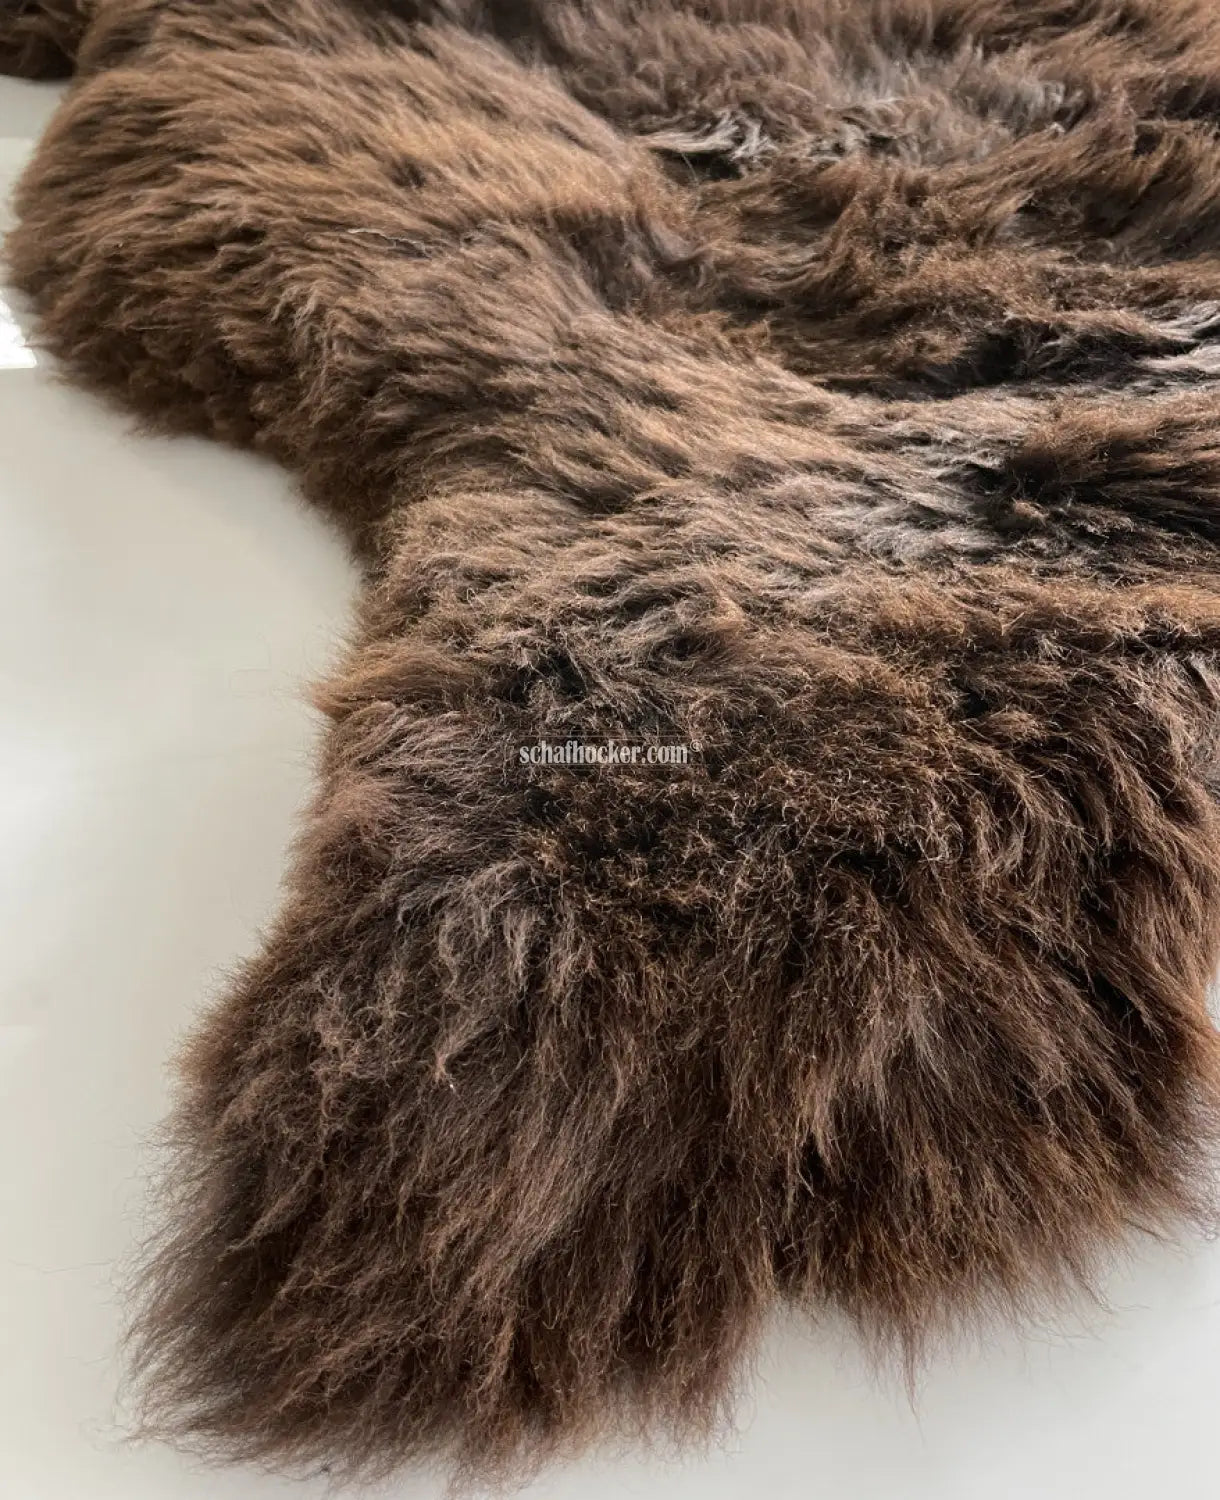 Seat cushion 110-120cm fur “brown bear brown” – handgefertigte